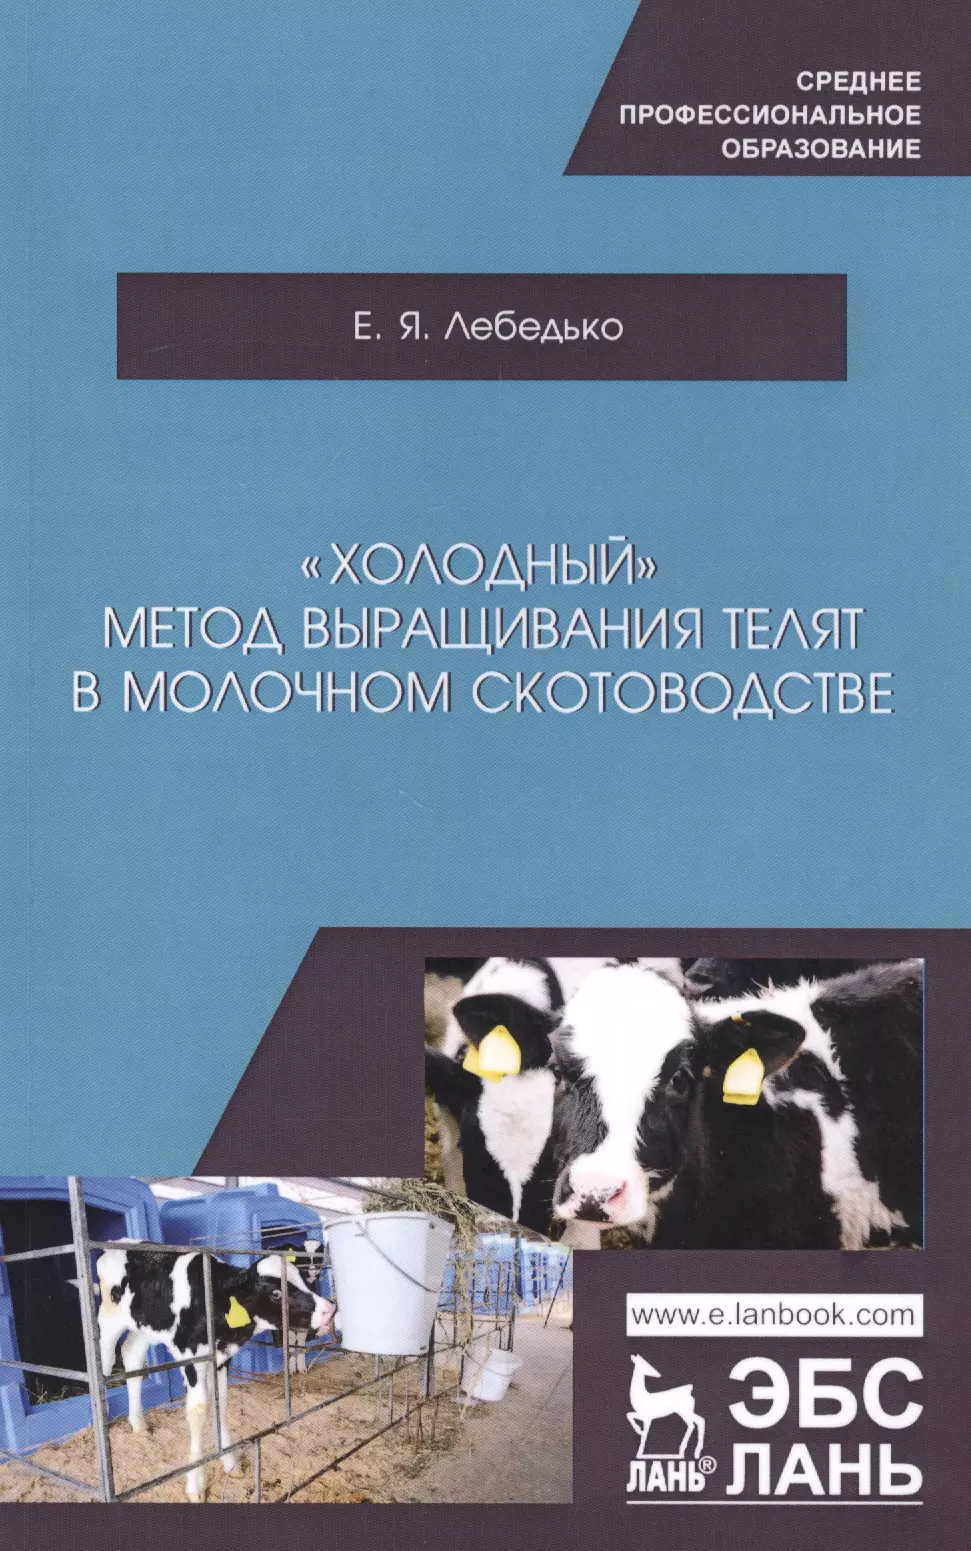 Лебедько Егор Яковлевич - "Холодный" метод выращивания телят в молочном скотоводстве. Учебное пособие